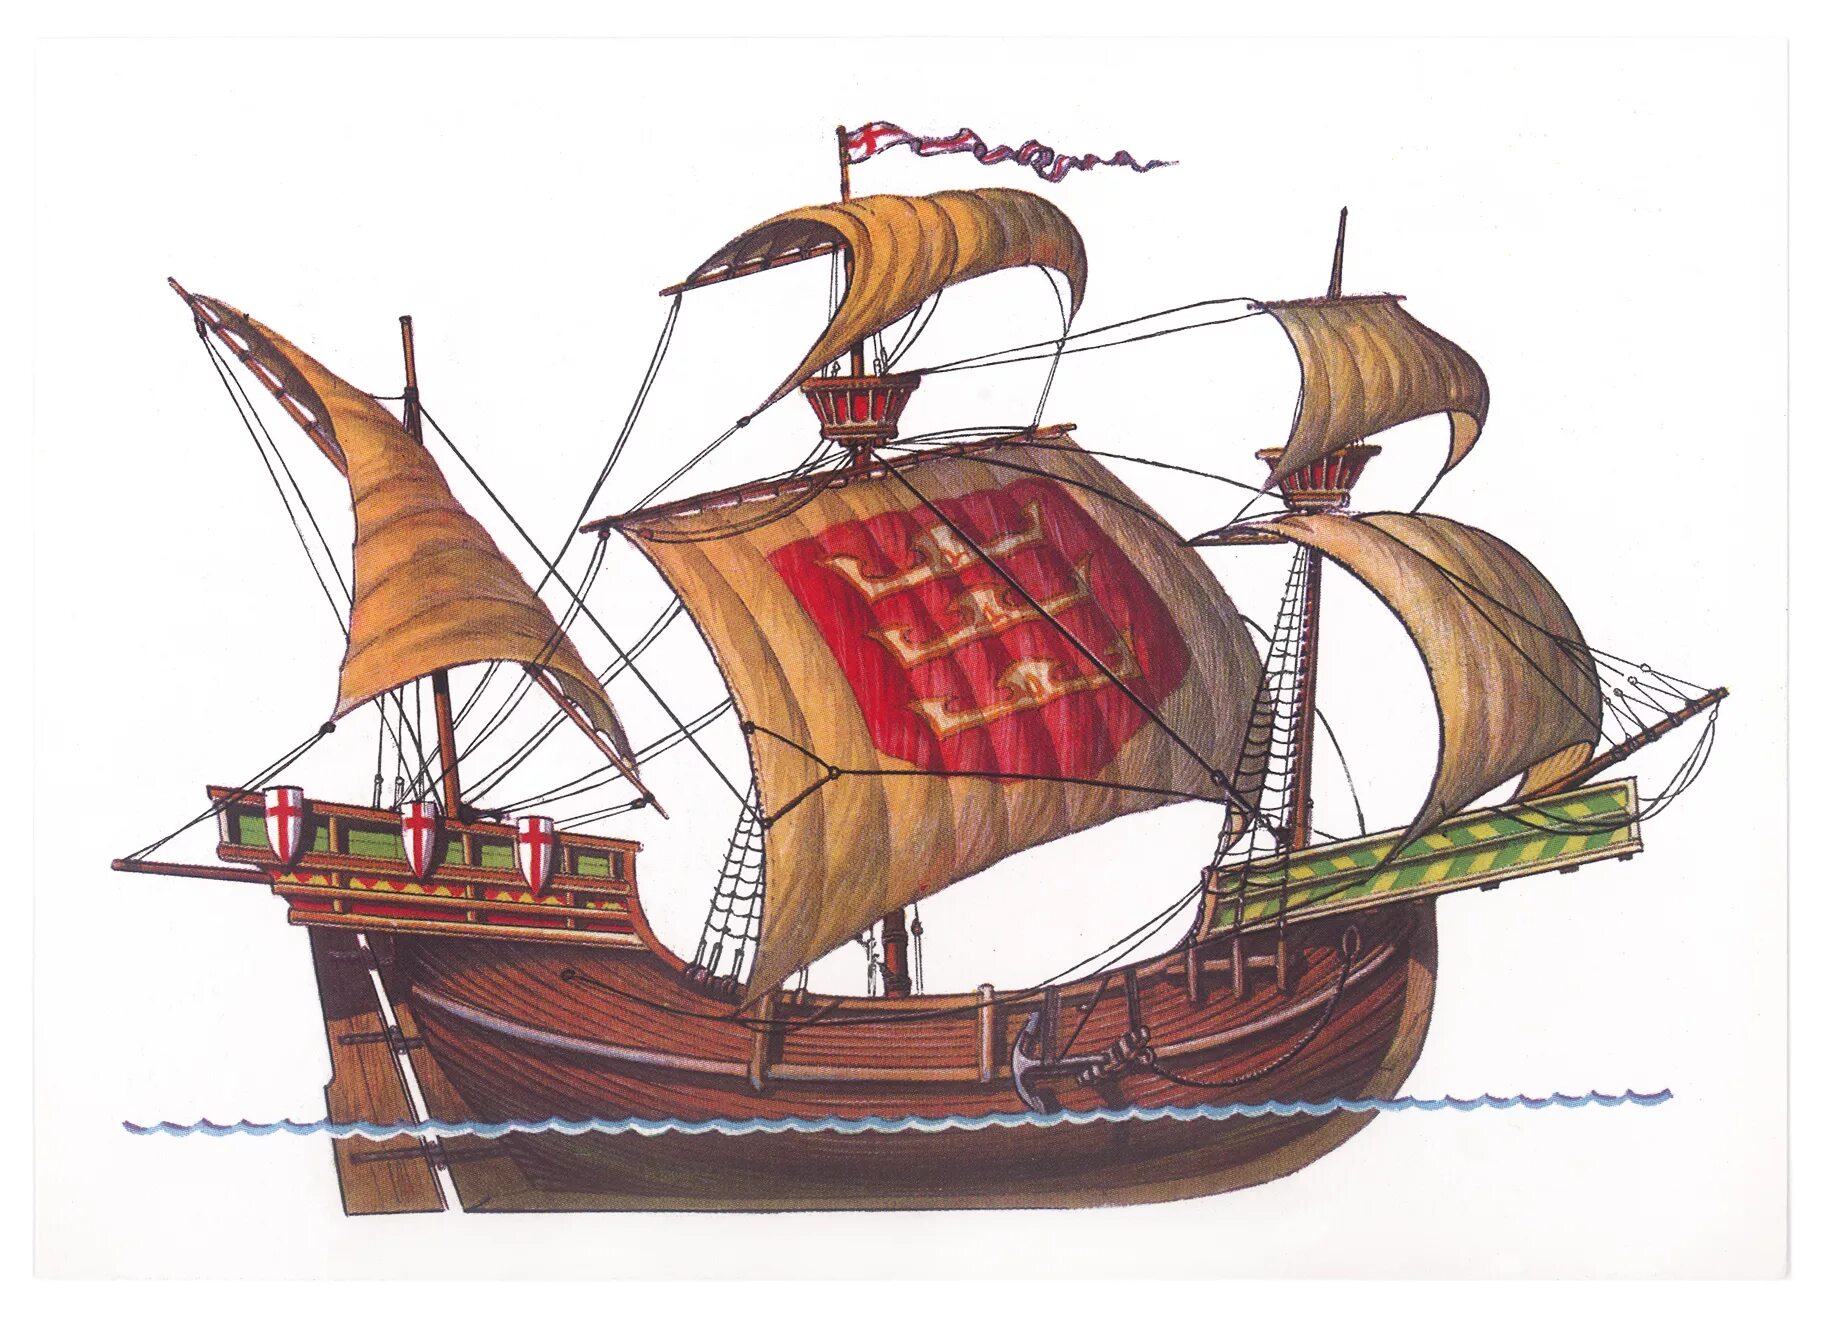 Неф корабль 15 века. Венецианский Неф корабль. Когг корабль средневековья. Средневековый корабль Неф Венецианский.